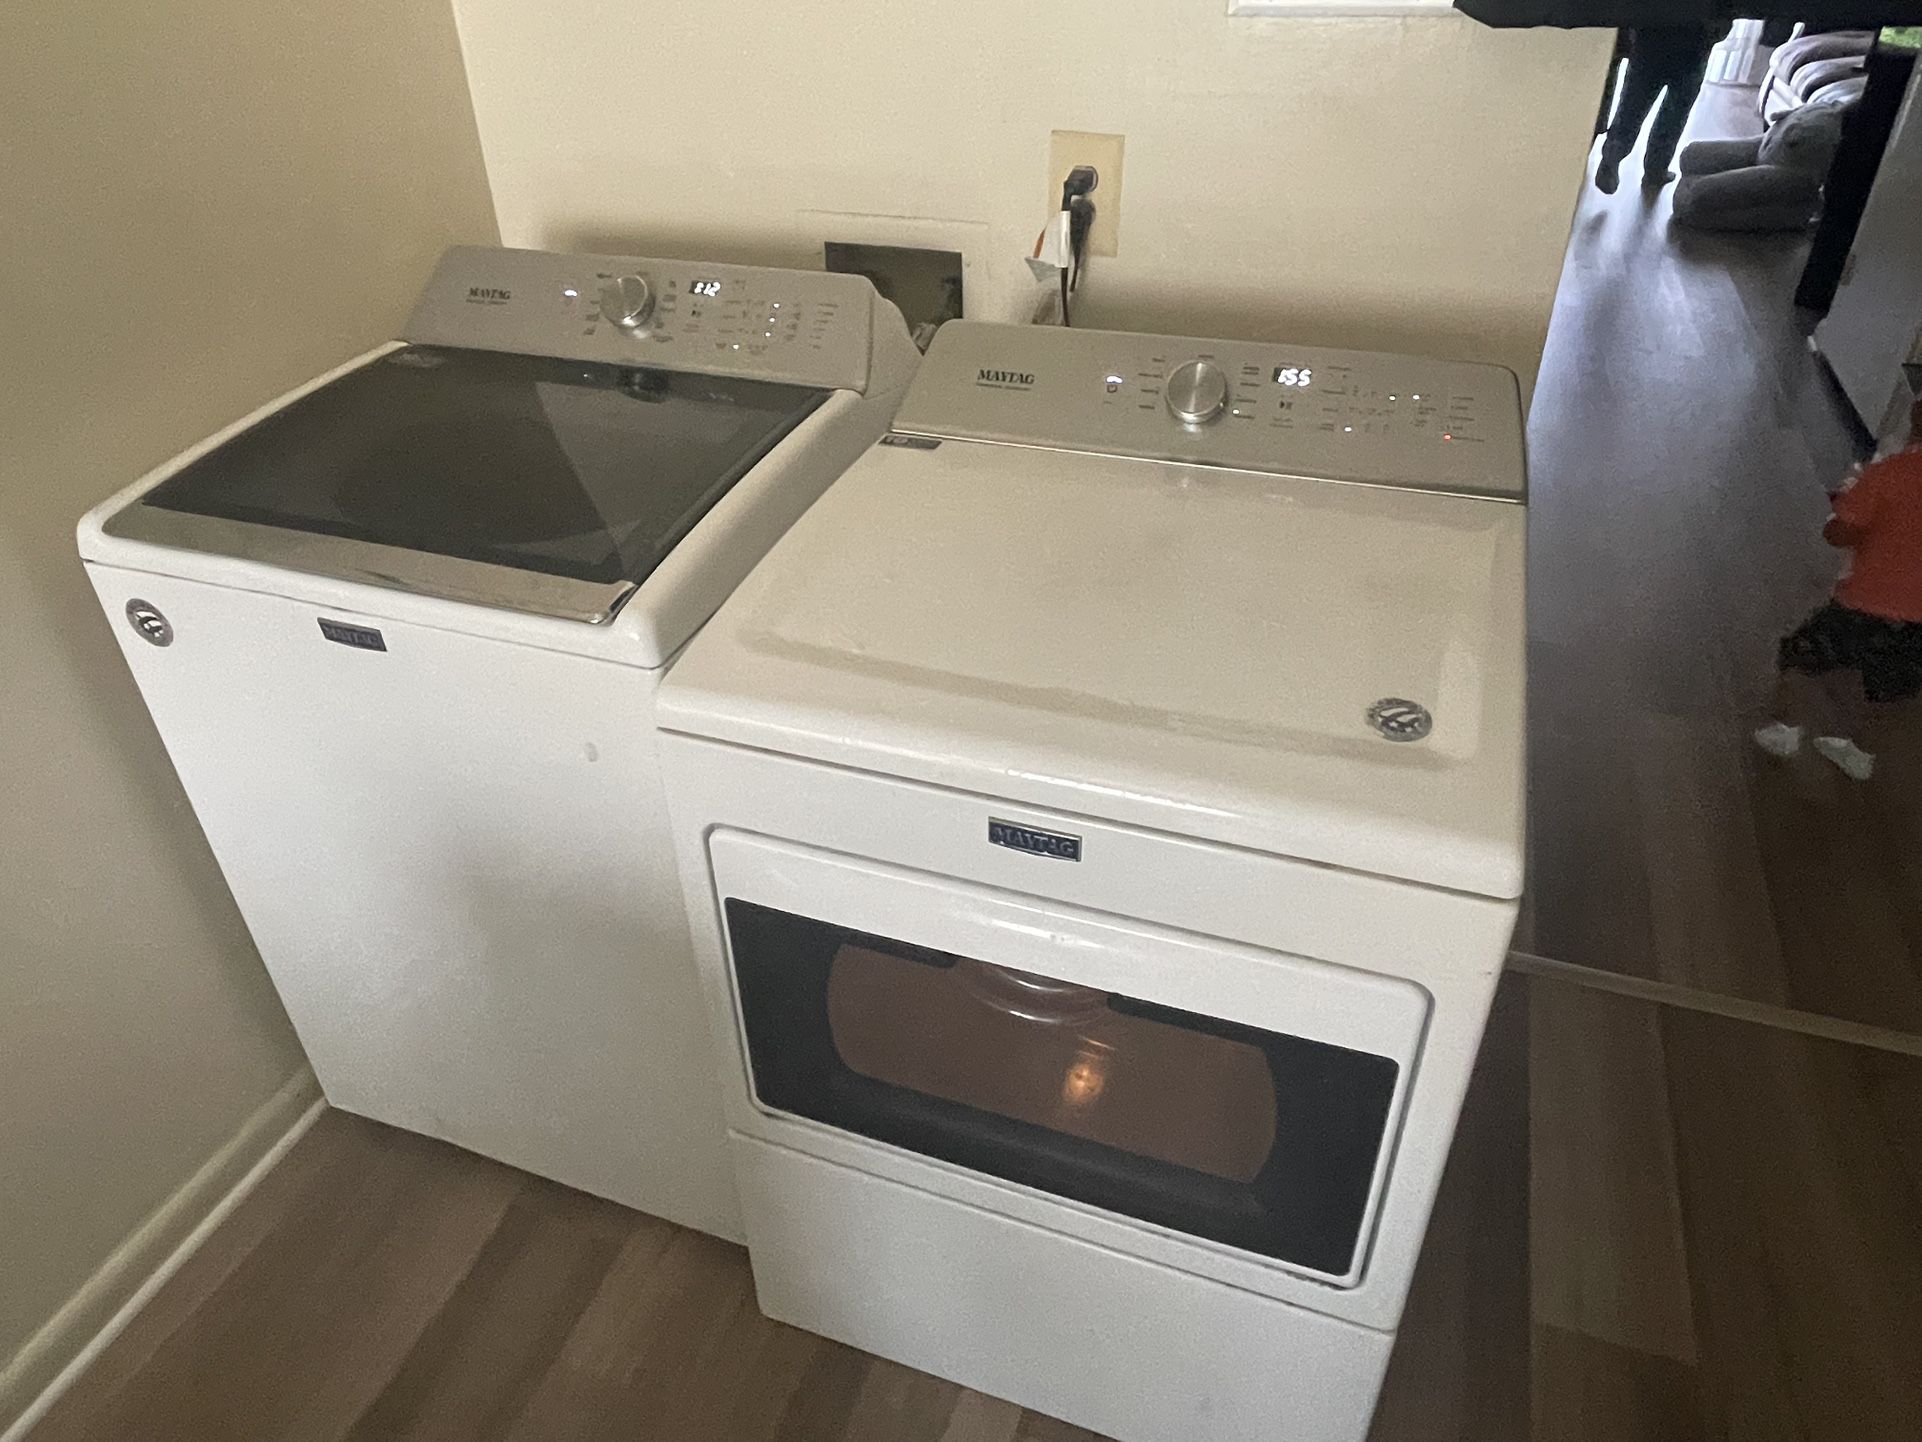 2019 Washer Dryer Set